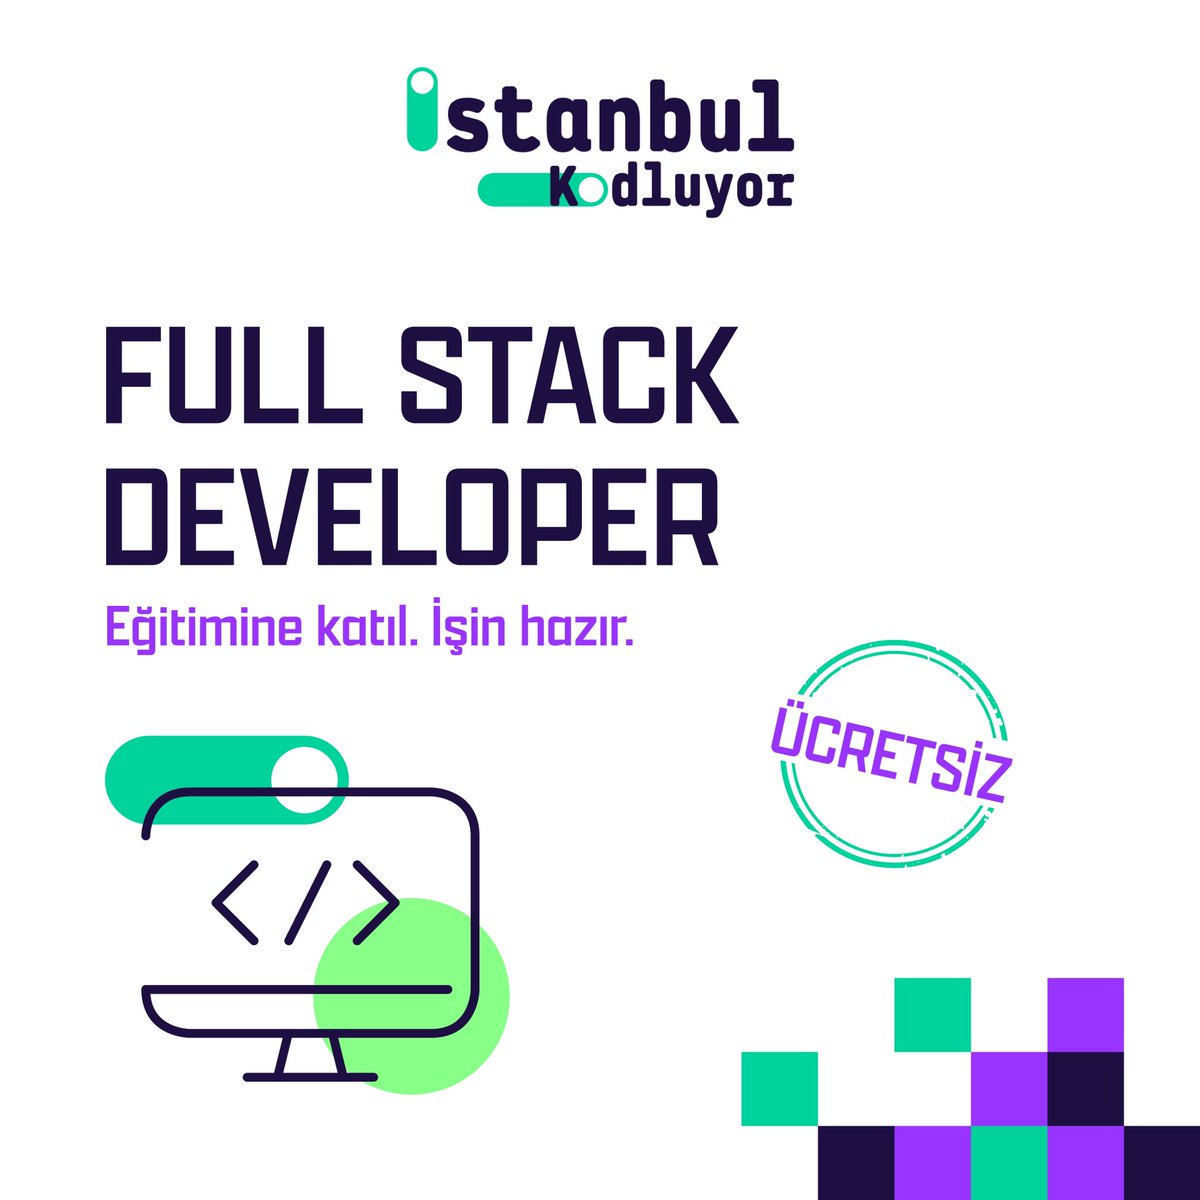 Full Stack Developer eğitimleriyle, sen de kodlama dünyasına ilk adımını at!  Çeşitli programlama dilleri ve teknolojiler kullanarak web siteleri ve uygulamalar oluşturmayı öğrenmek için istanbulkodluyor.com adresini ziyaret etmeyi unutma. #İstanbulKodluyor #Tobeto